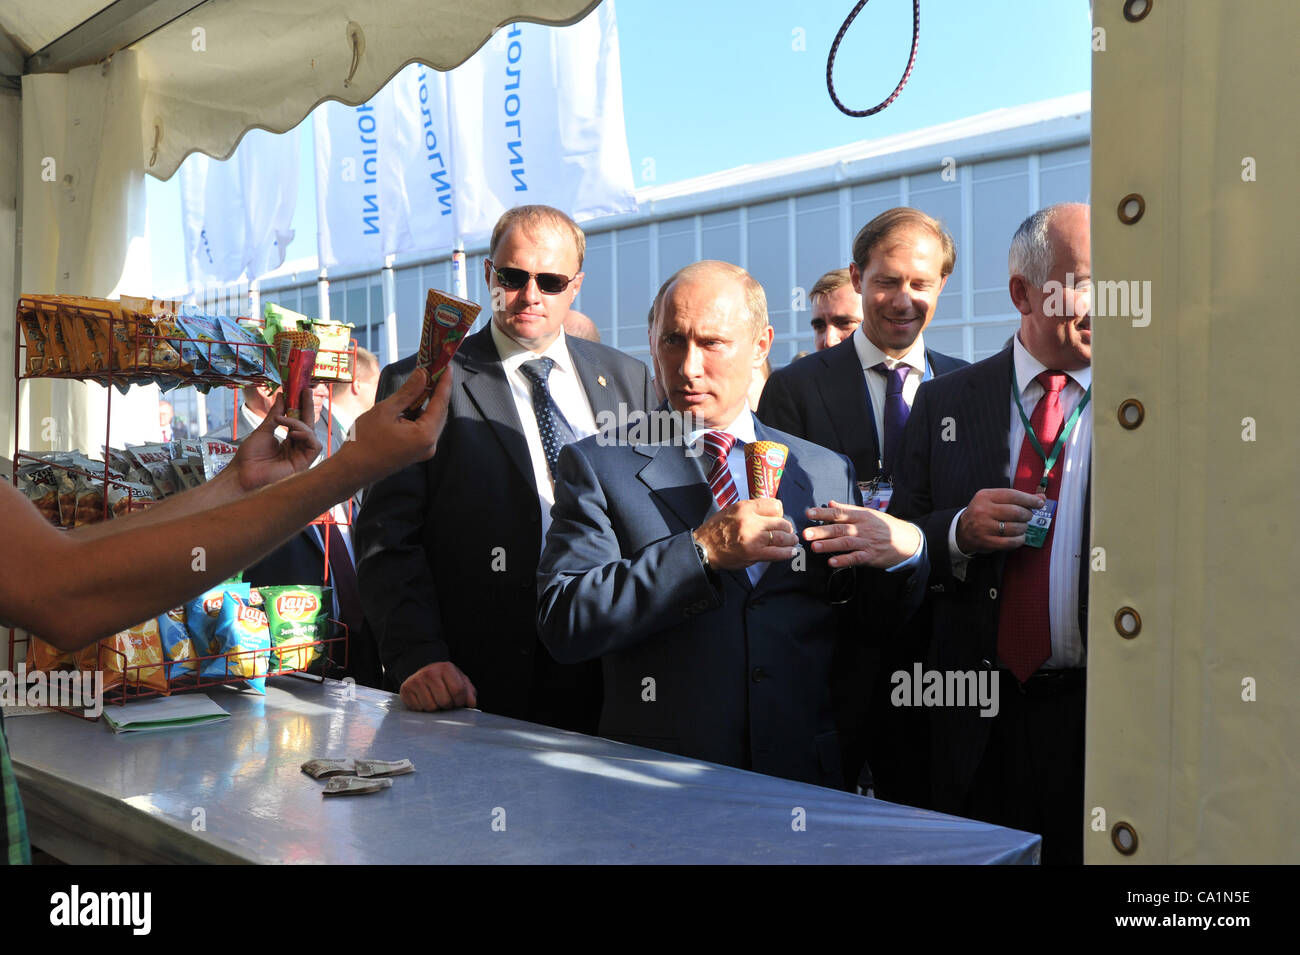 17 août 2011 - Zhukovskij, Russie - Août 17,2011. Moscou, Russie. Premier ministre de la Russie Vladimir Poutine (c) achète des glaces lors de la visite de MAX-2011. (Crédit Image : © PhotoXpress/ZUMAPRESS.com) Banque D'Images